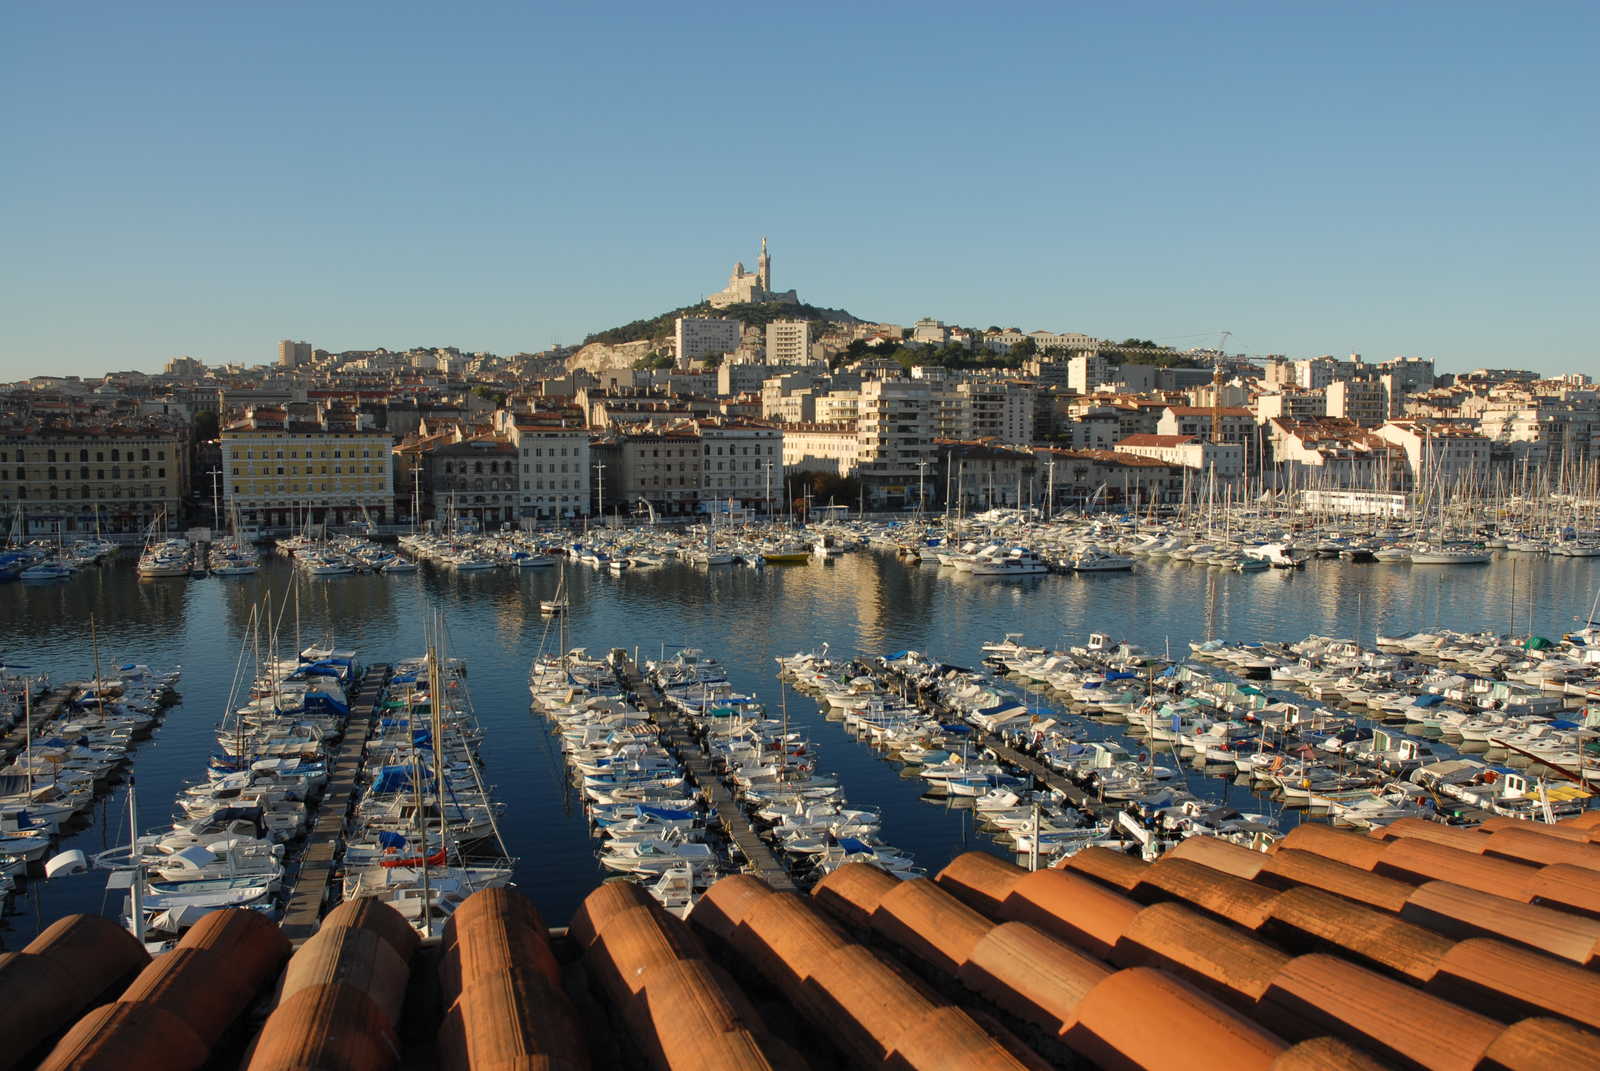 Image Du Vieux Port de Marseille aux calanques de Cassis